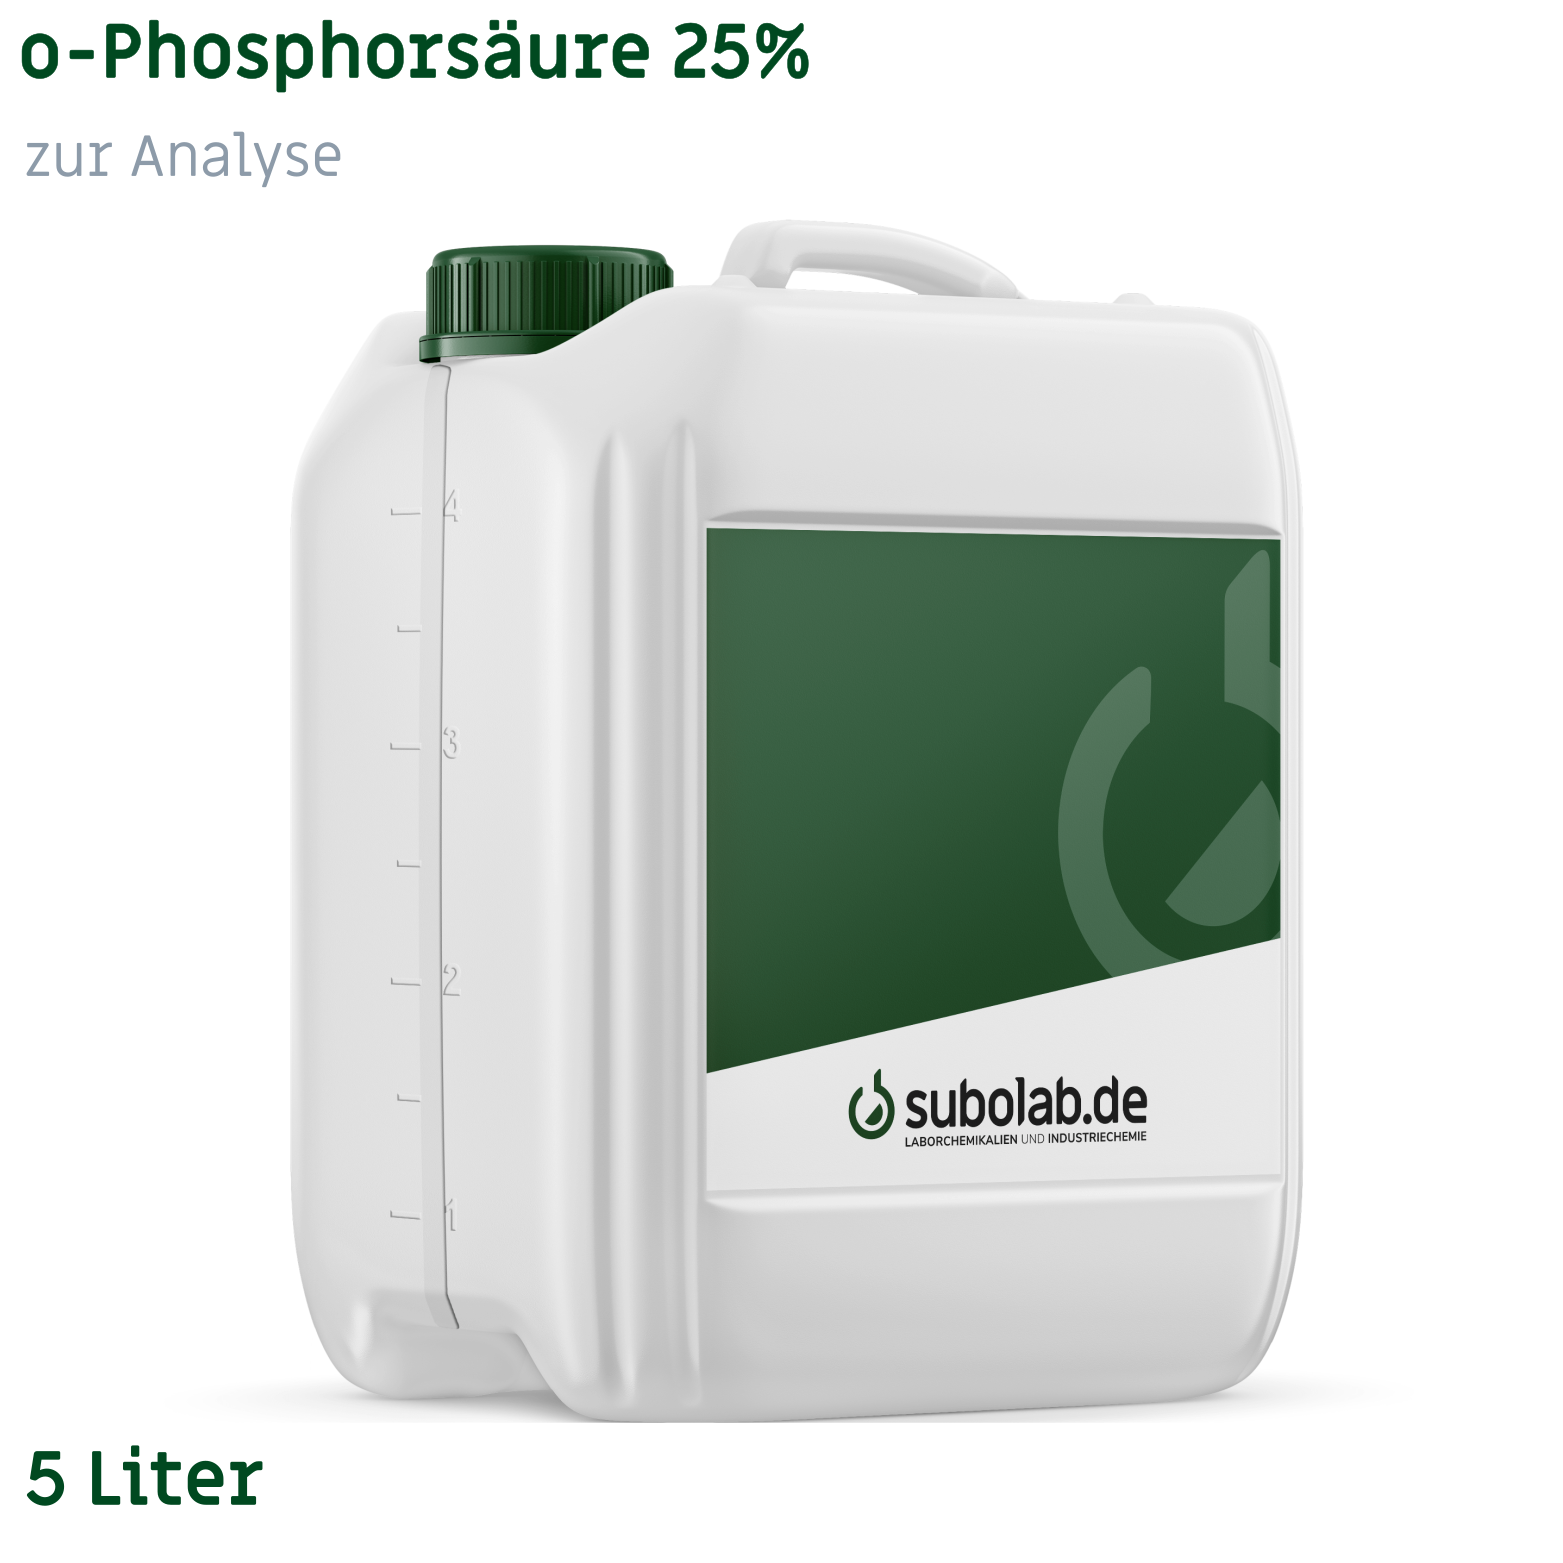 Bild von o-Phosphorsäure 25% zur Analyse (5 Liter)